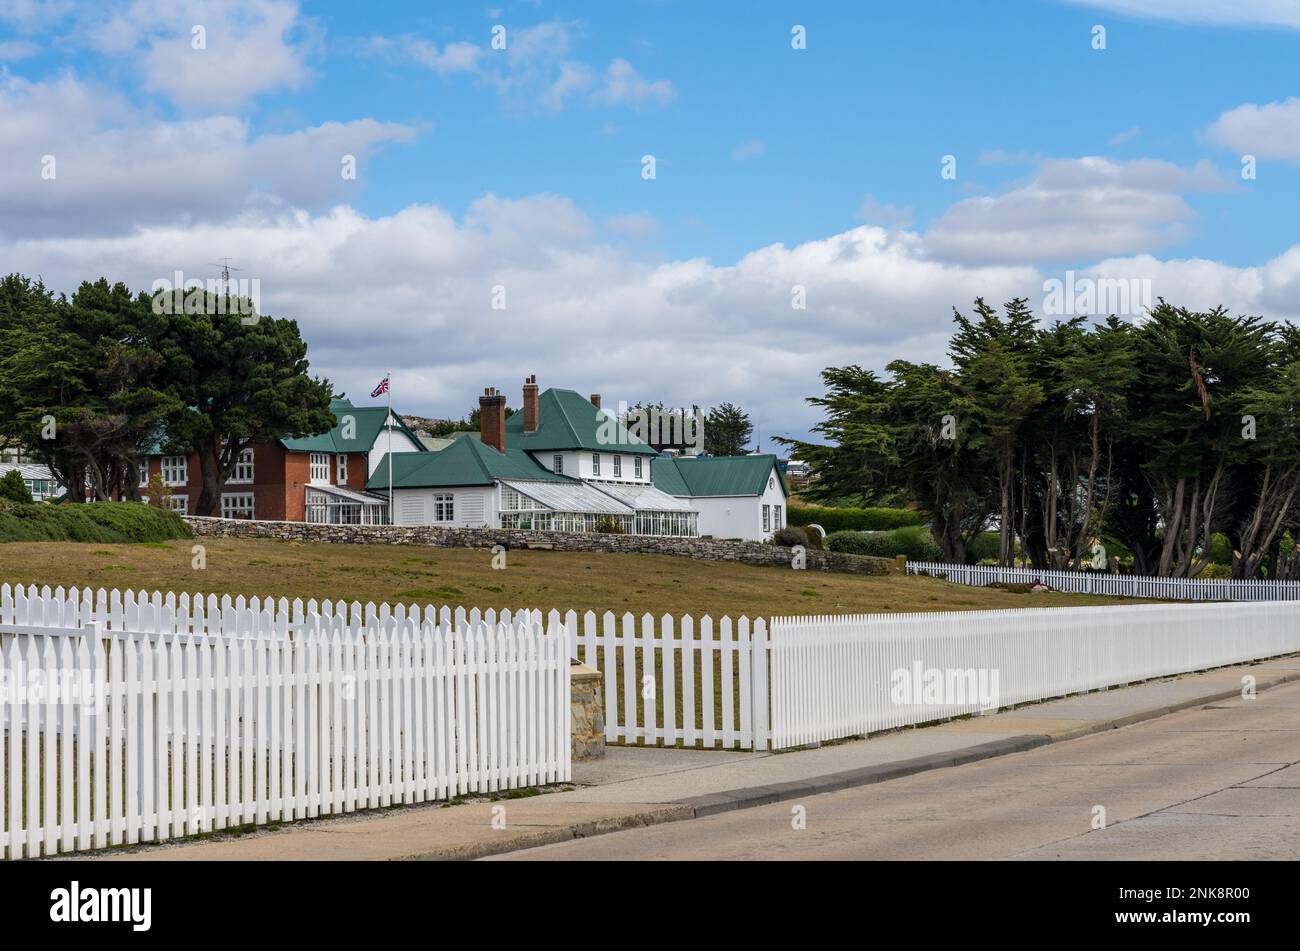 Maison du gouvernement, résidence officielle du gouverneur construite en 1845 dans les îles Falkland de Stanley Banque D'Images